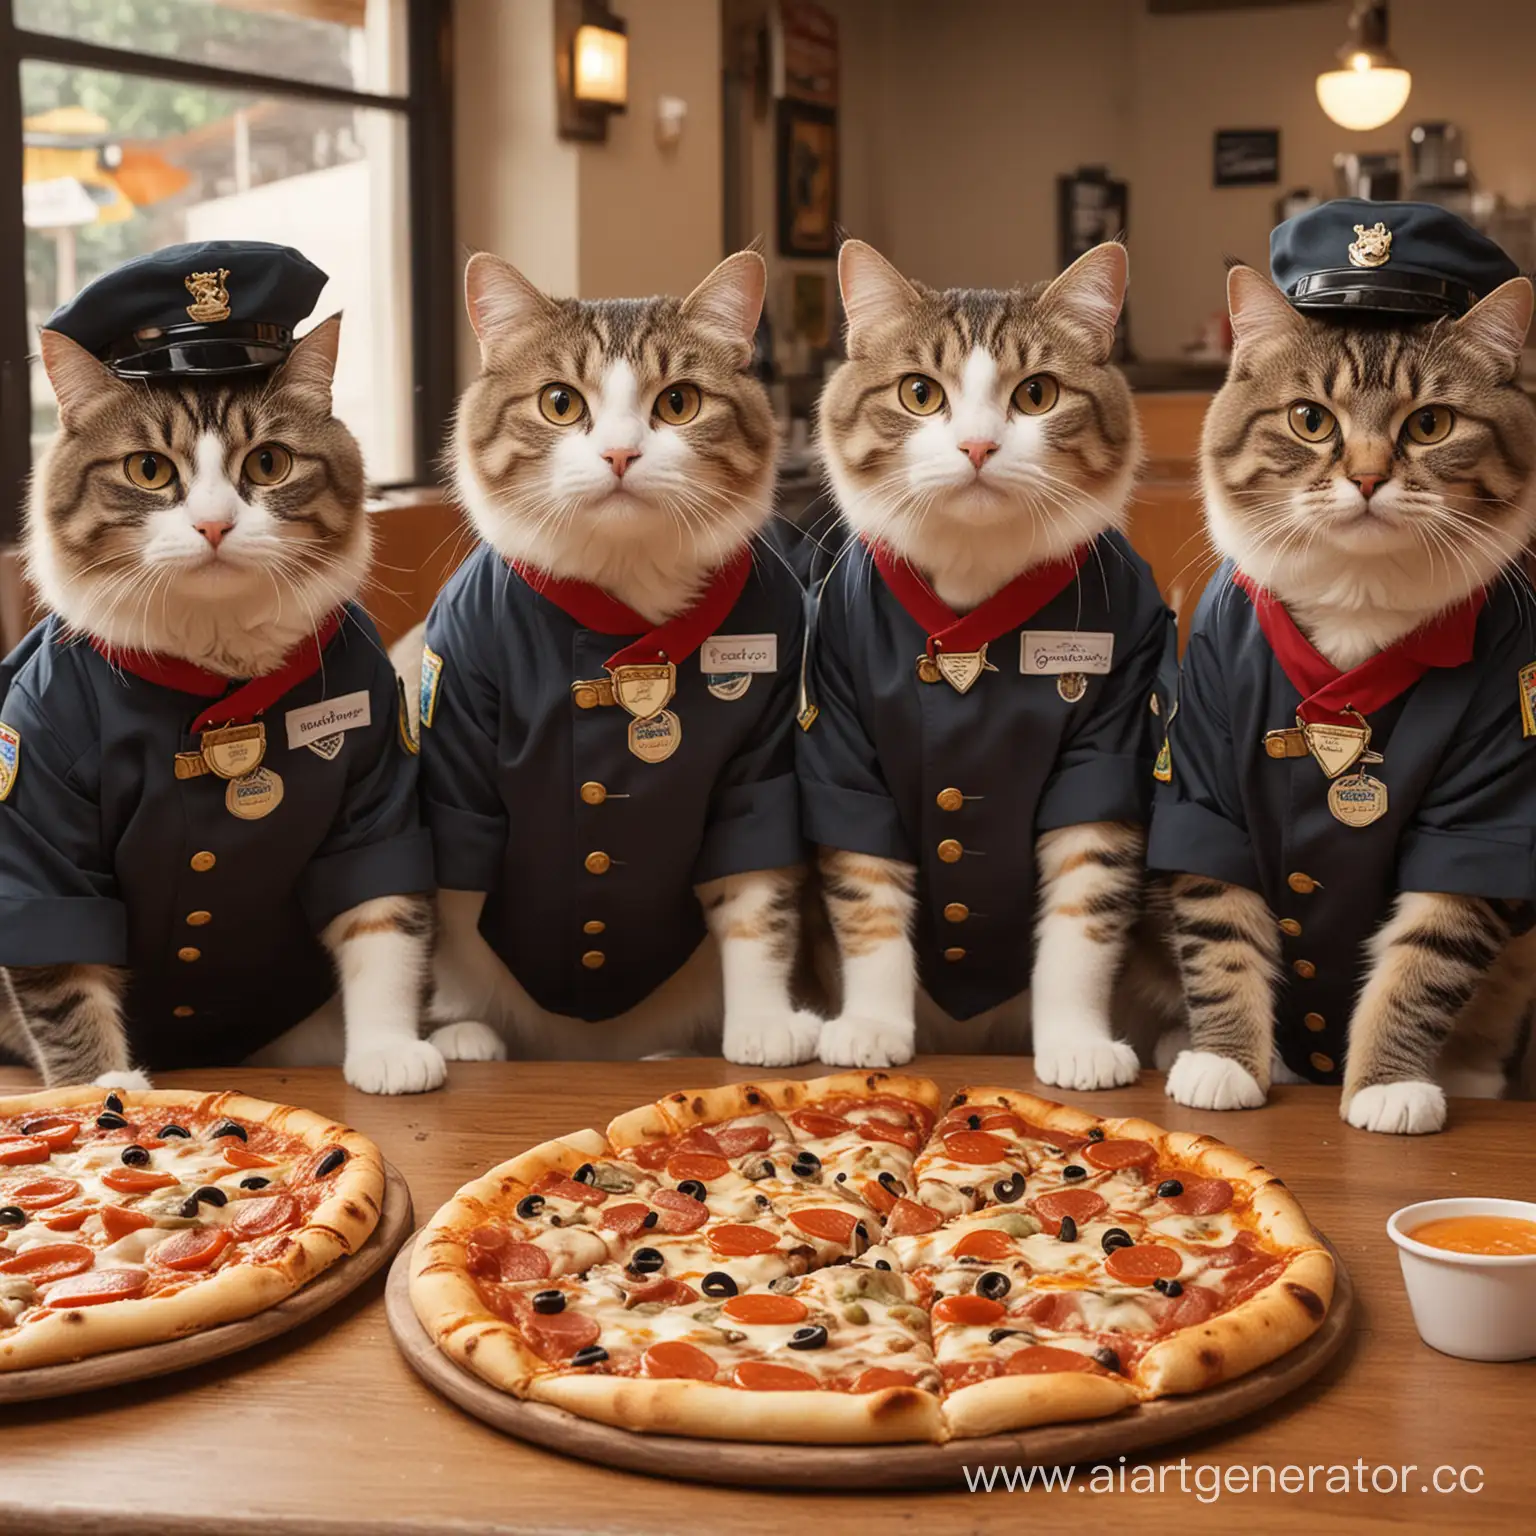 нарисуй мне несколько разных изображений приятных, пушистых котиков, одетых в униформу заведения «Додо-пицца» , которые кушают Додо-пиццу, пьют напиток и  смотрят прямо в камеру